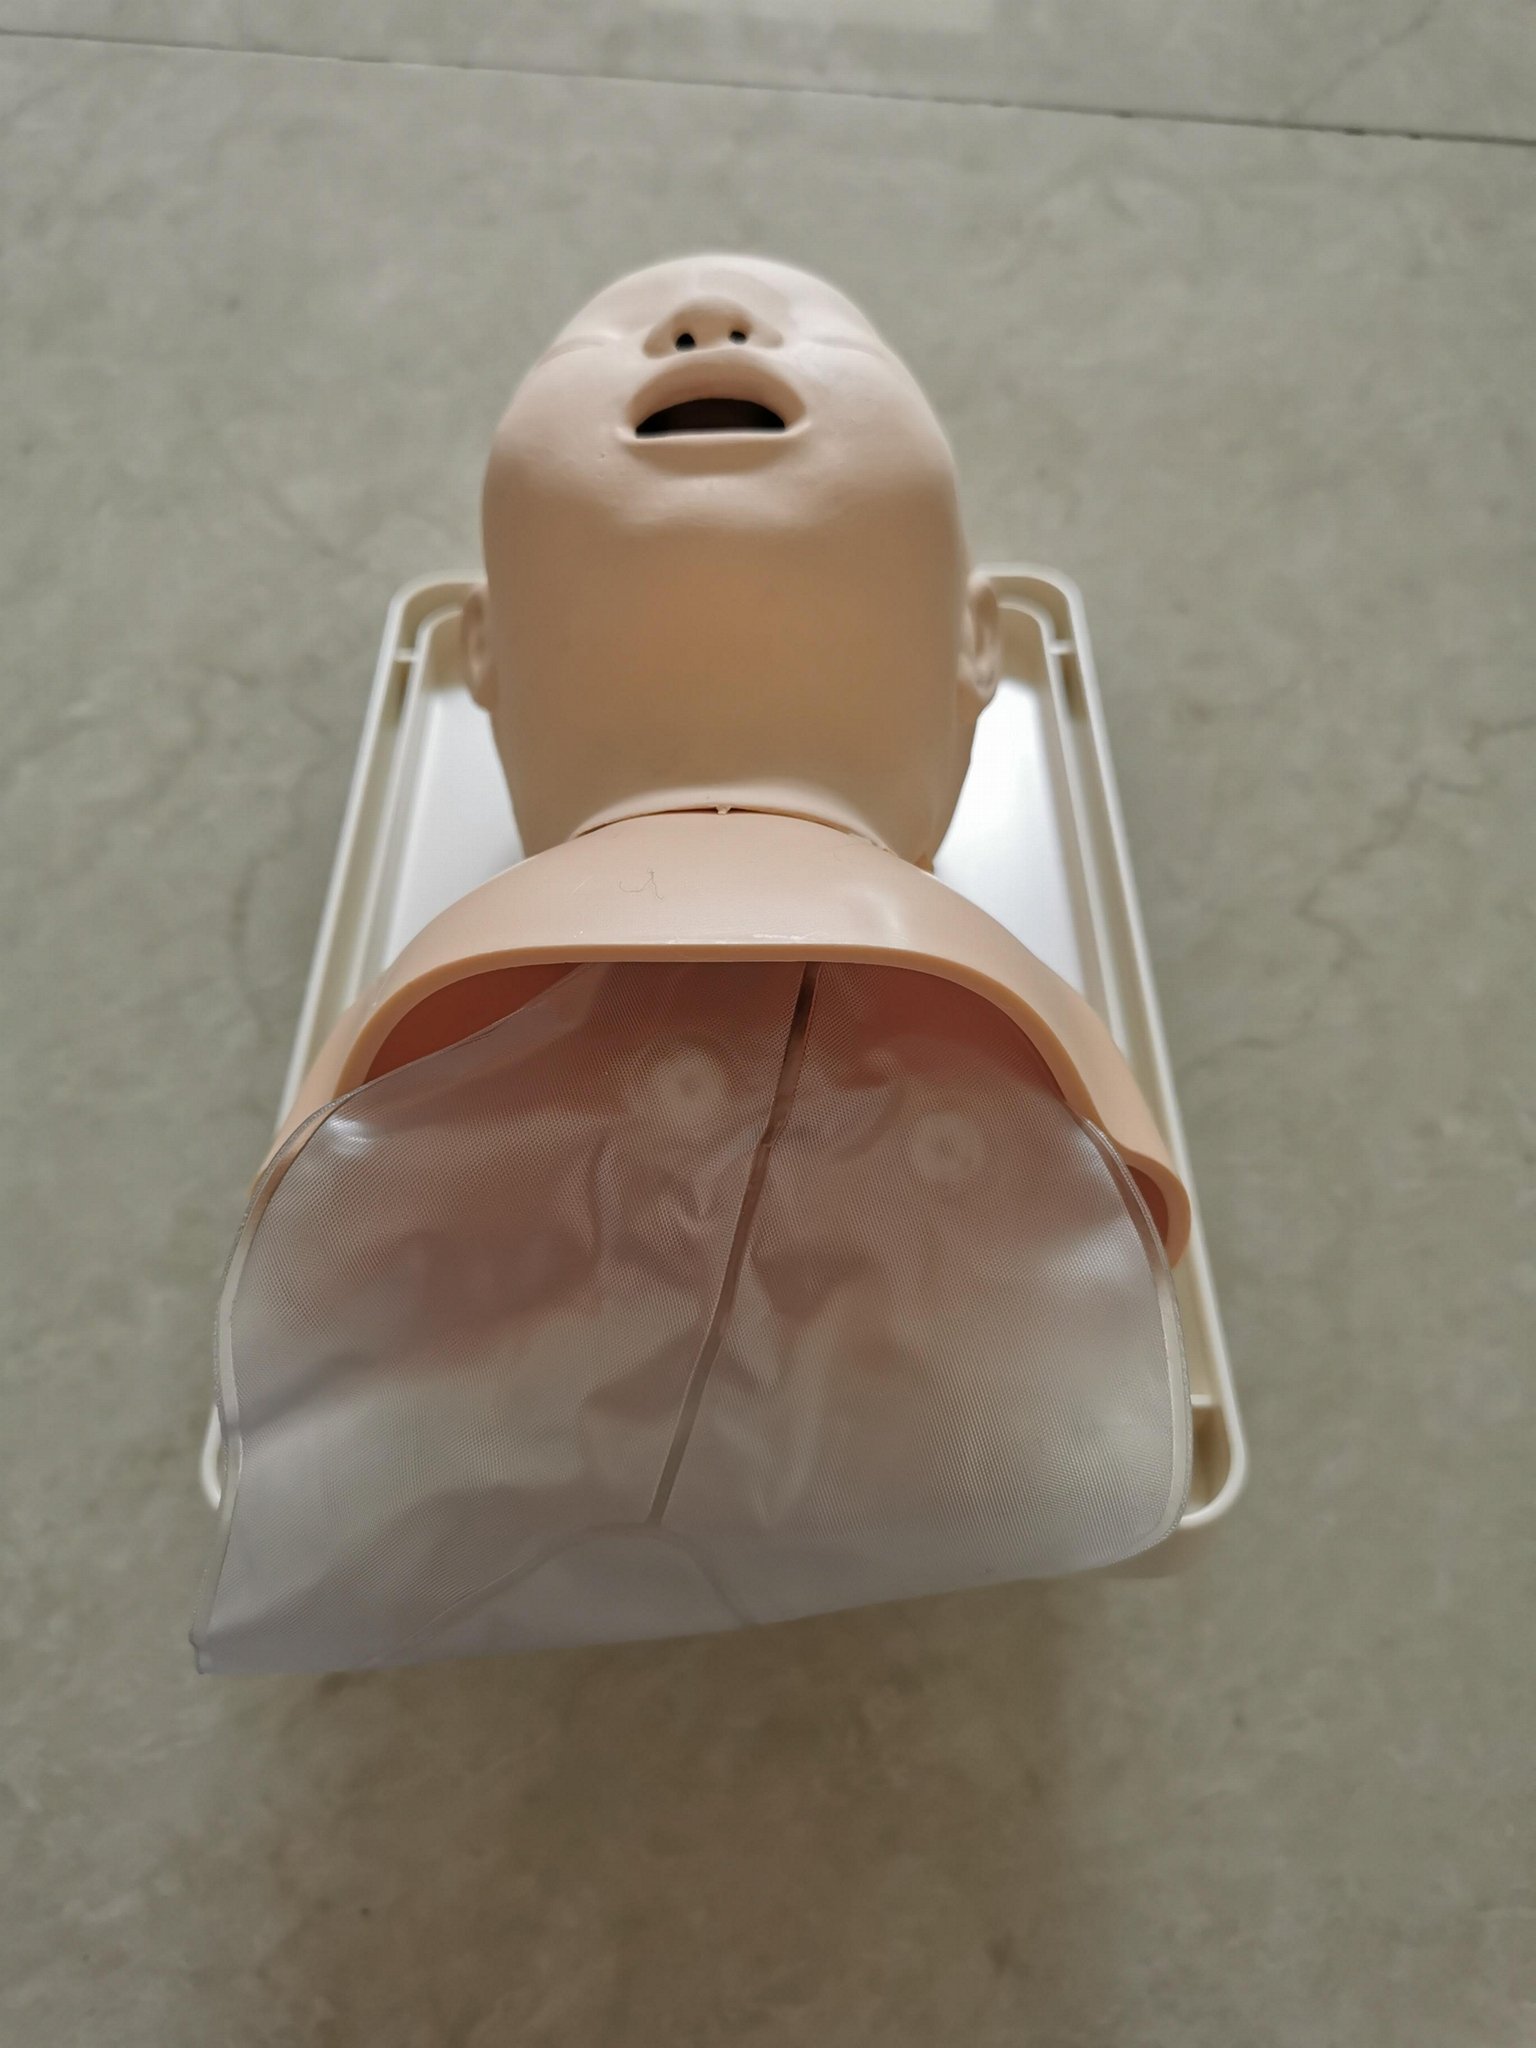 挪度嬰儿氣管插管訓練模型250-00250，小儿氣道管理模型 4